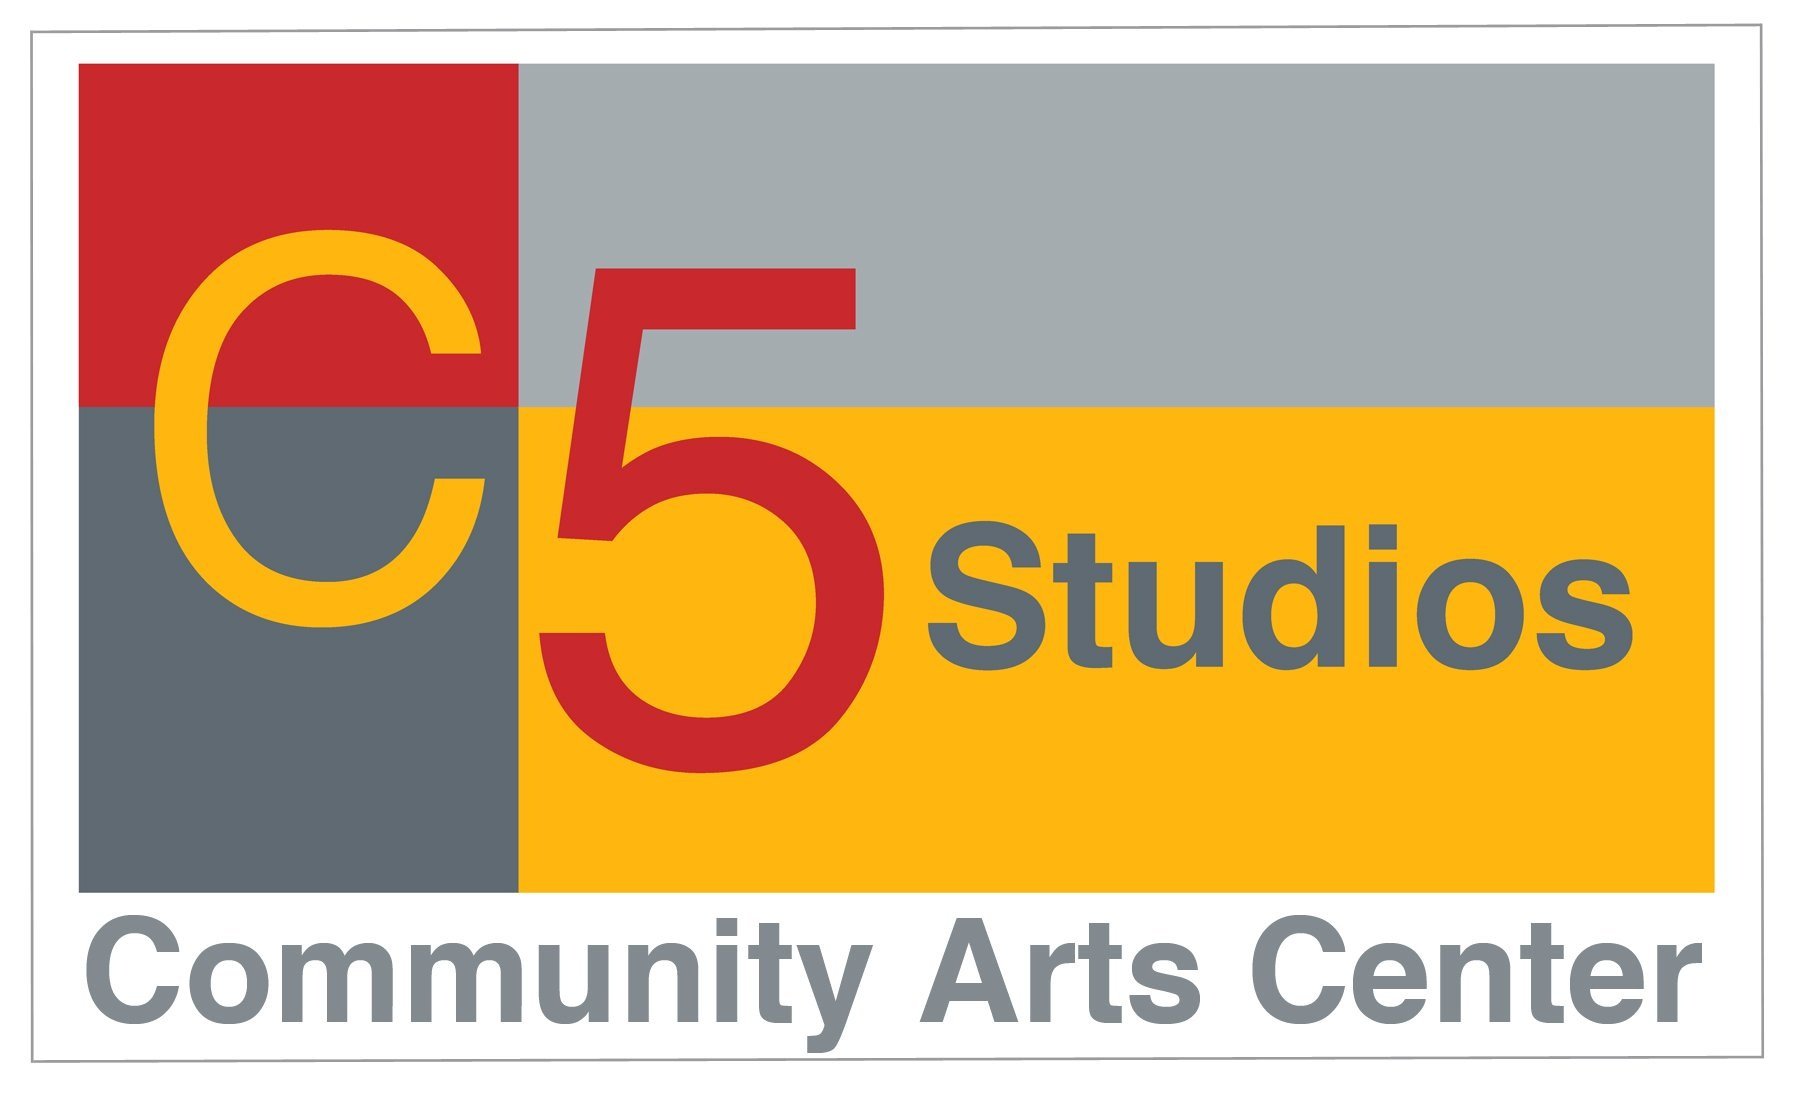 C5 Studios Community Arts Center